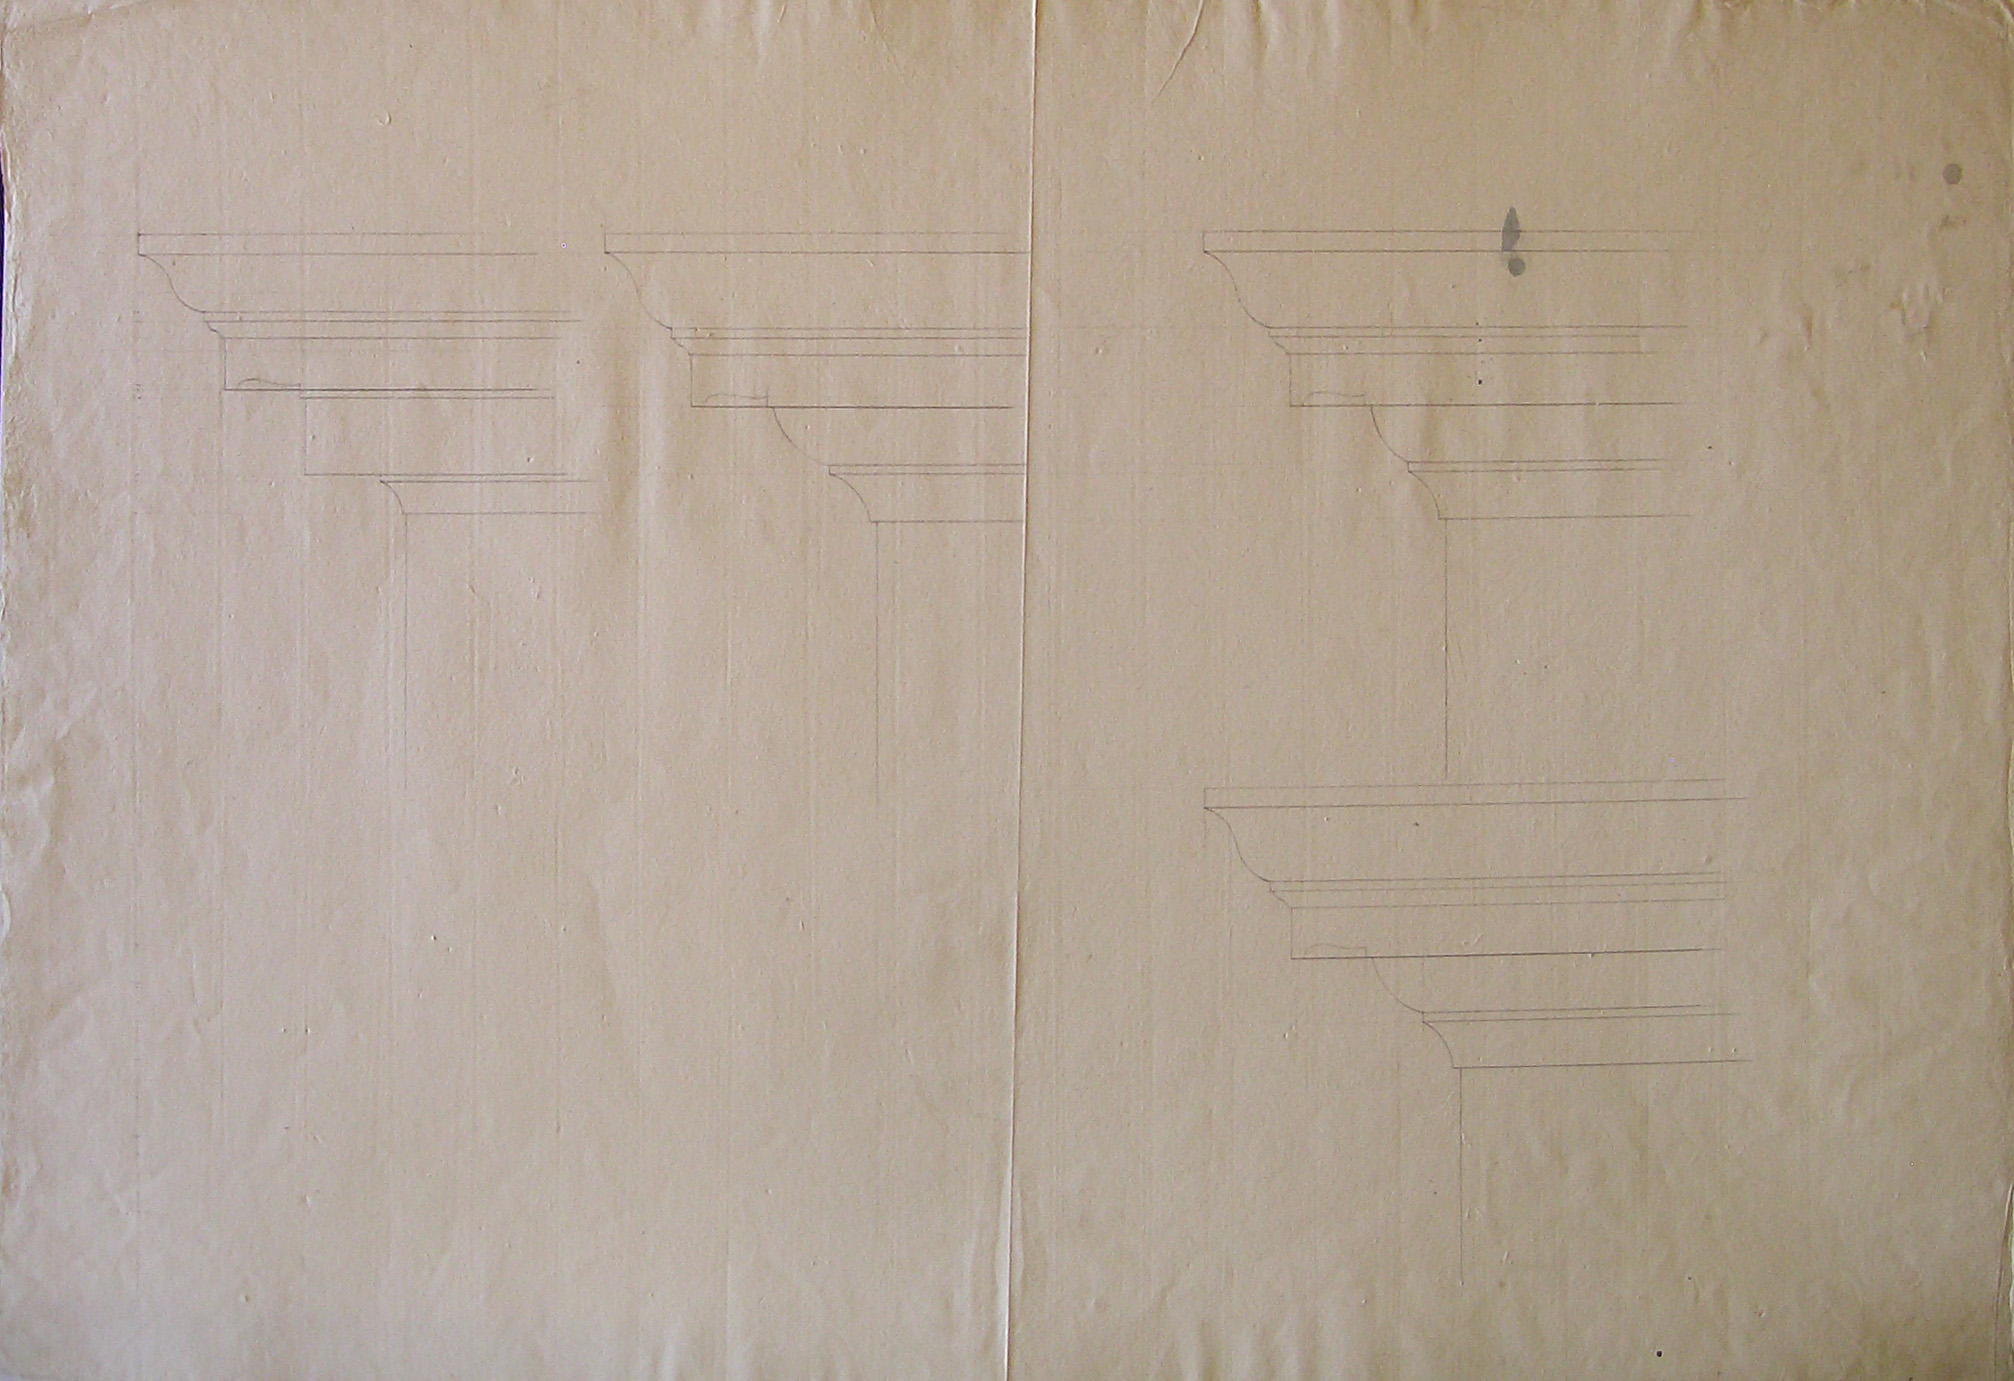 Dettaglio di cornici (disegno architettonico, opera isolata) di Cagnola Luigi (attribuito) (secc. XVIII/XIX)